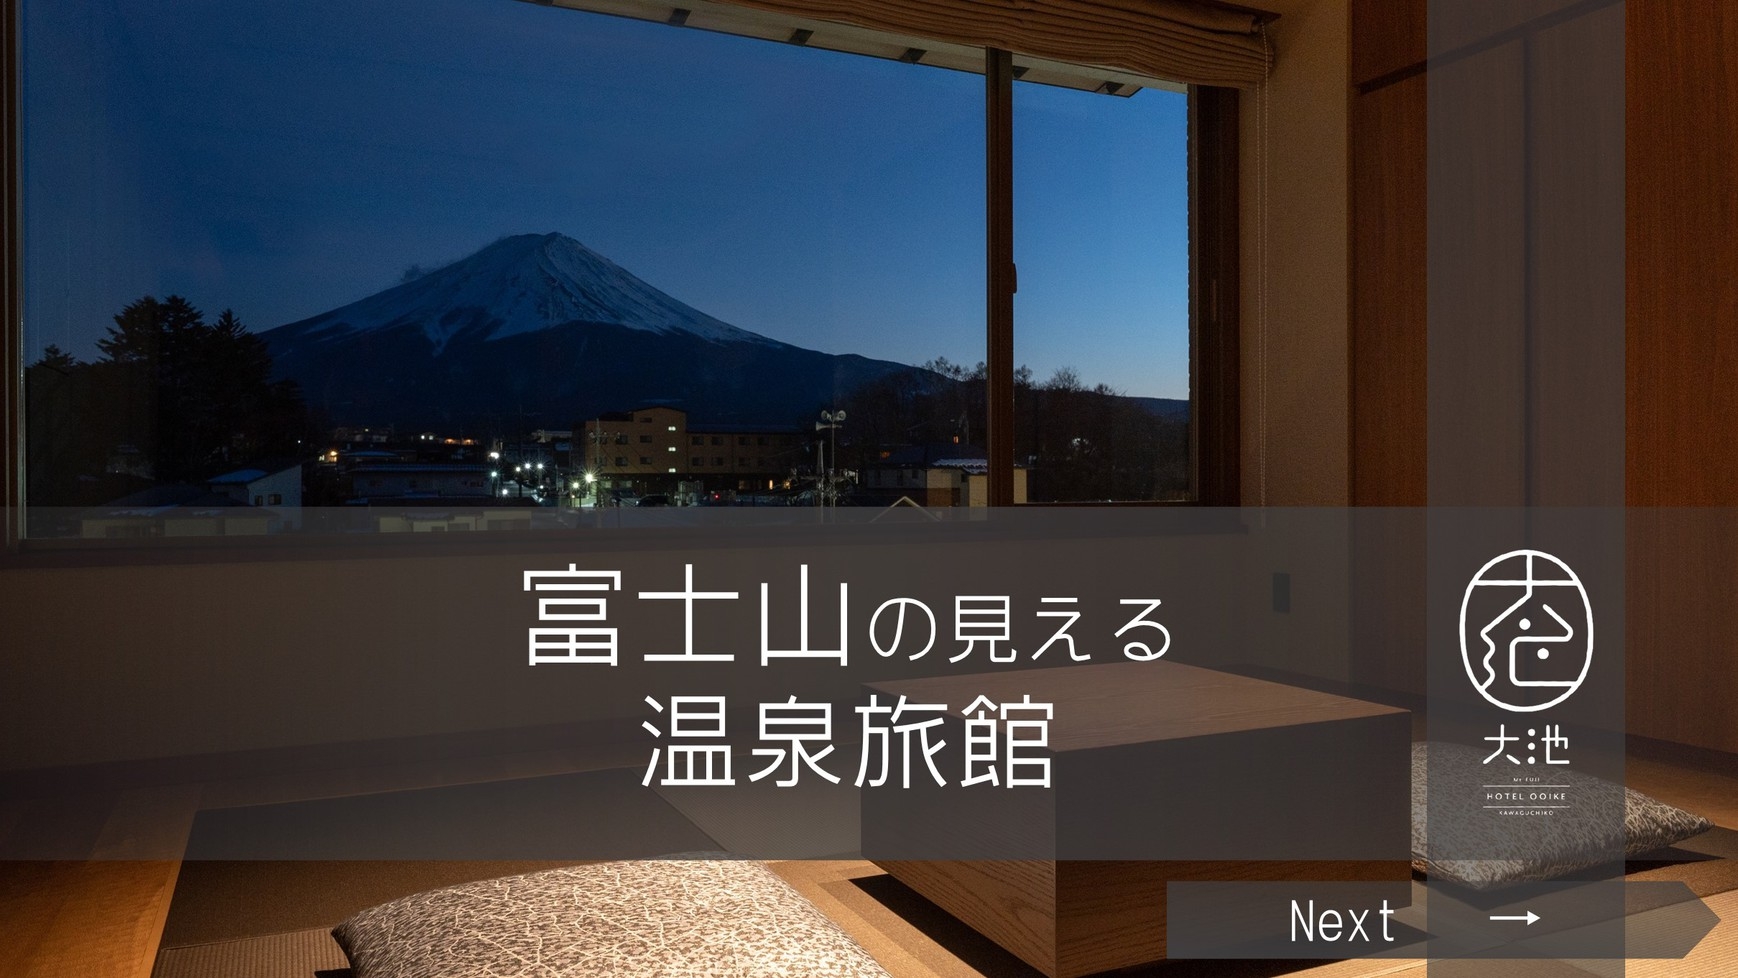 ー富士山の見える温泉旅館ー『基本プラン』【二食付】【楽天トラベル全国1位】【富士山を見る旅ならここ】